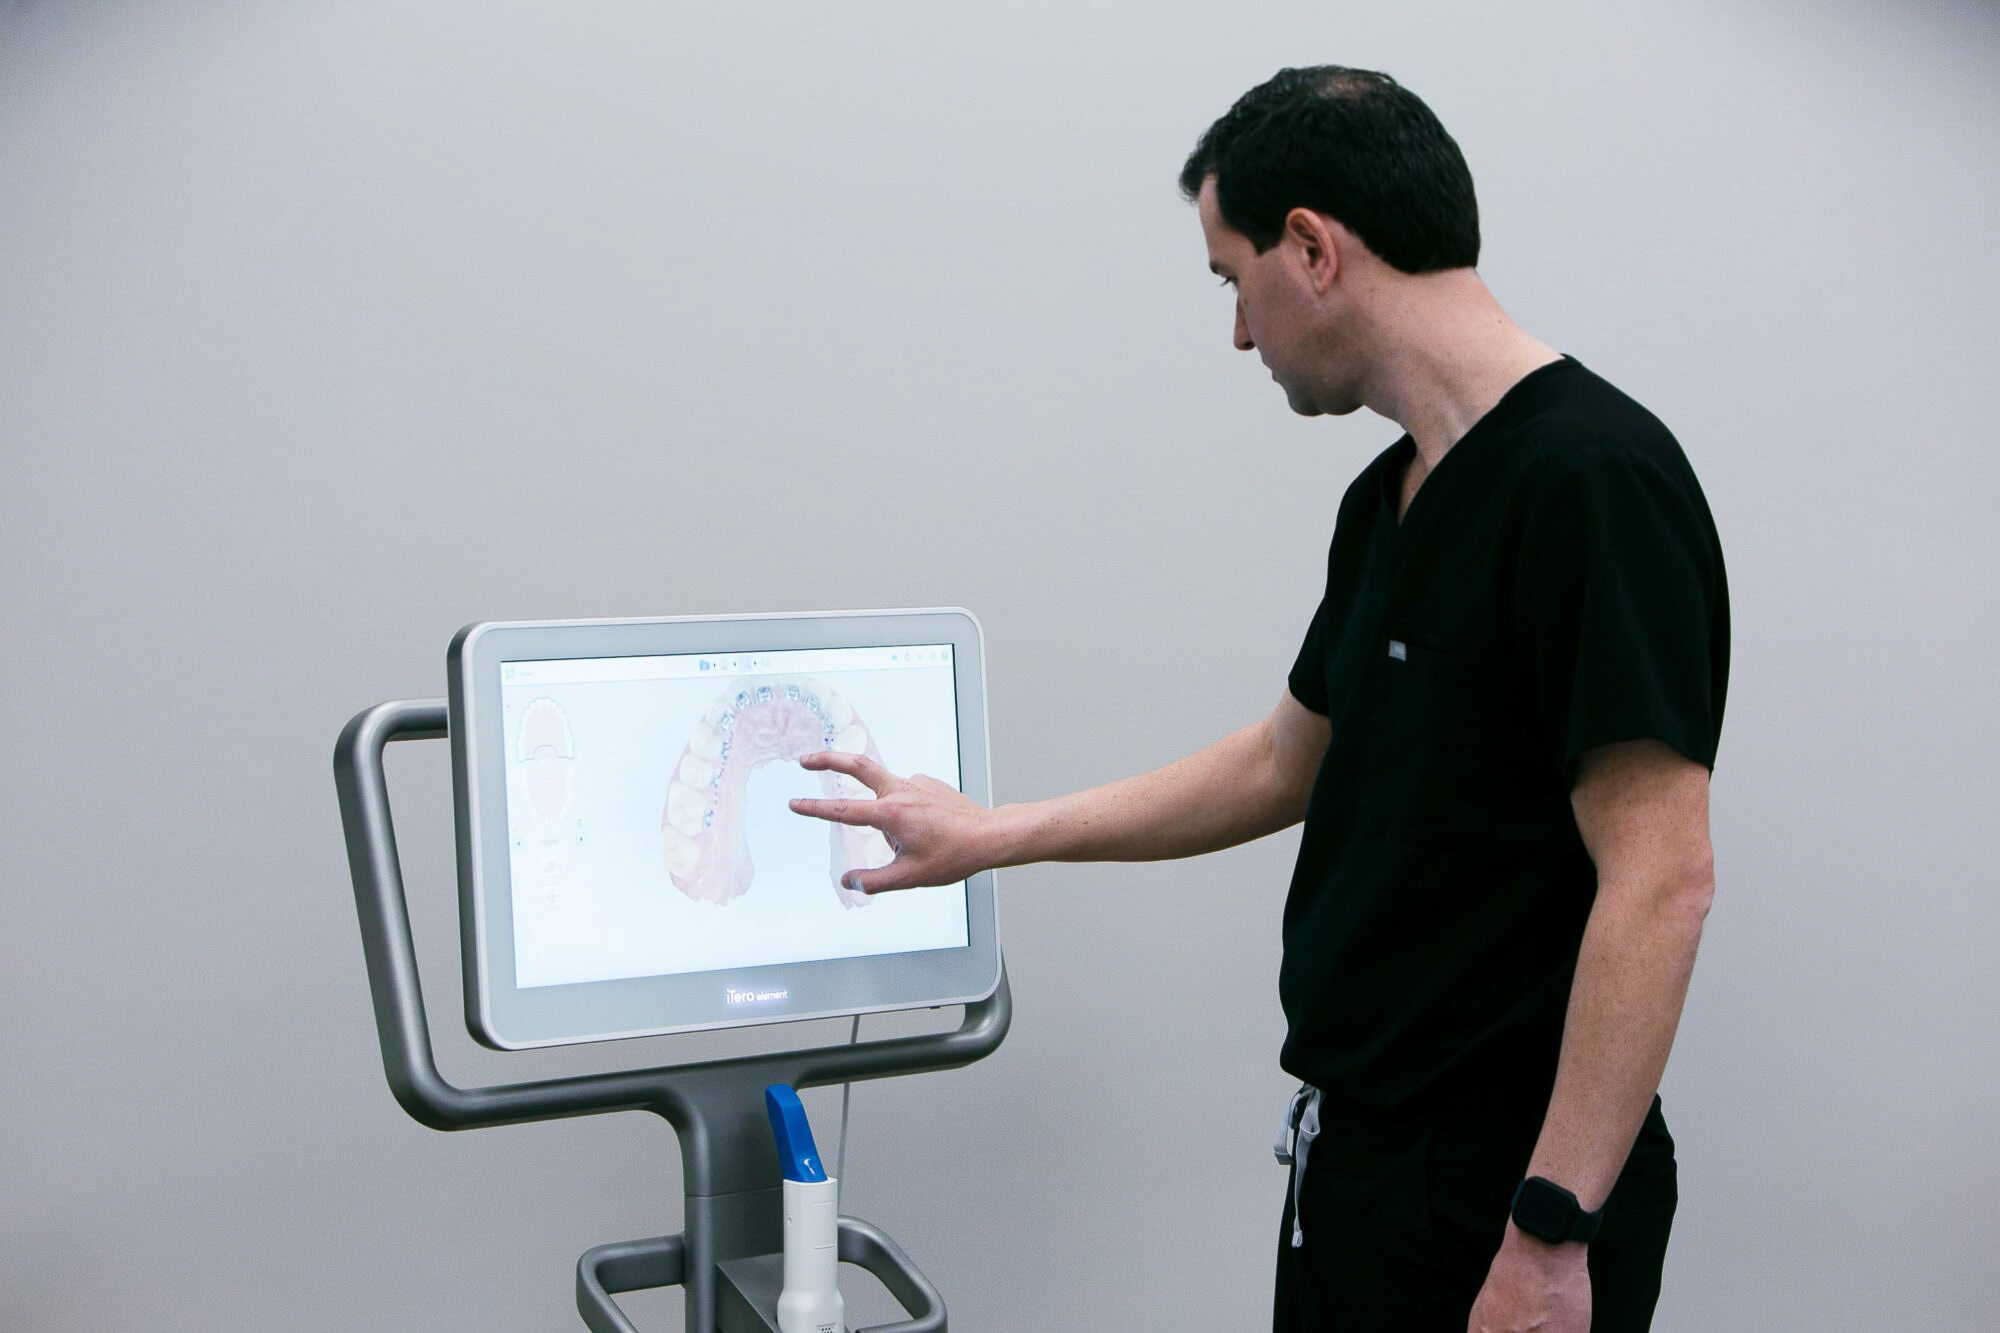 How Do X-Rays Track Progress In Orthodontics?